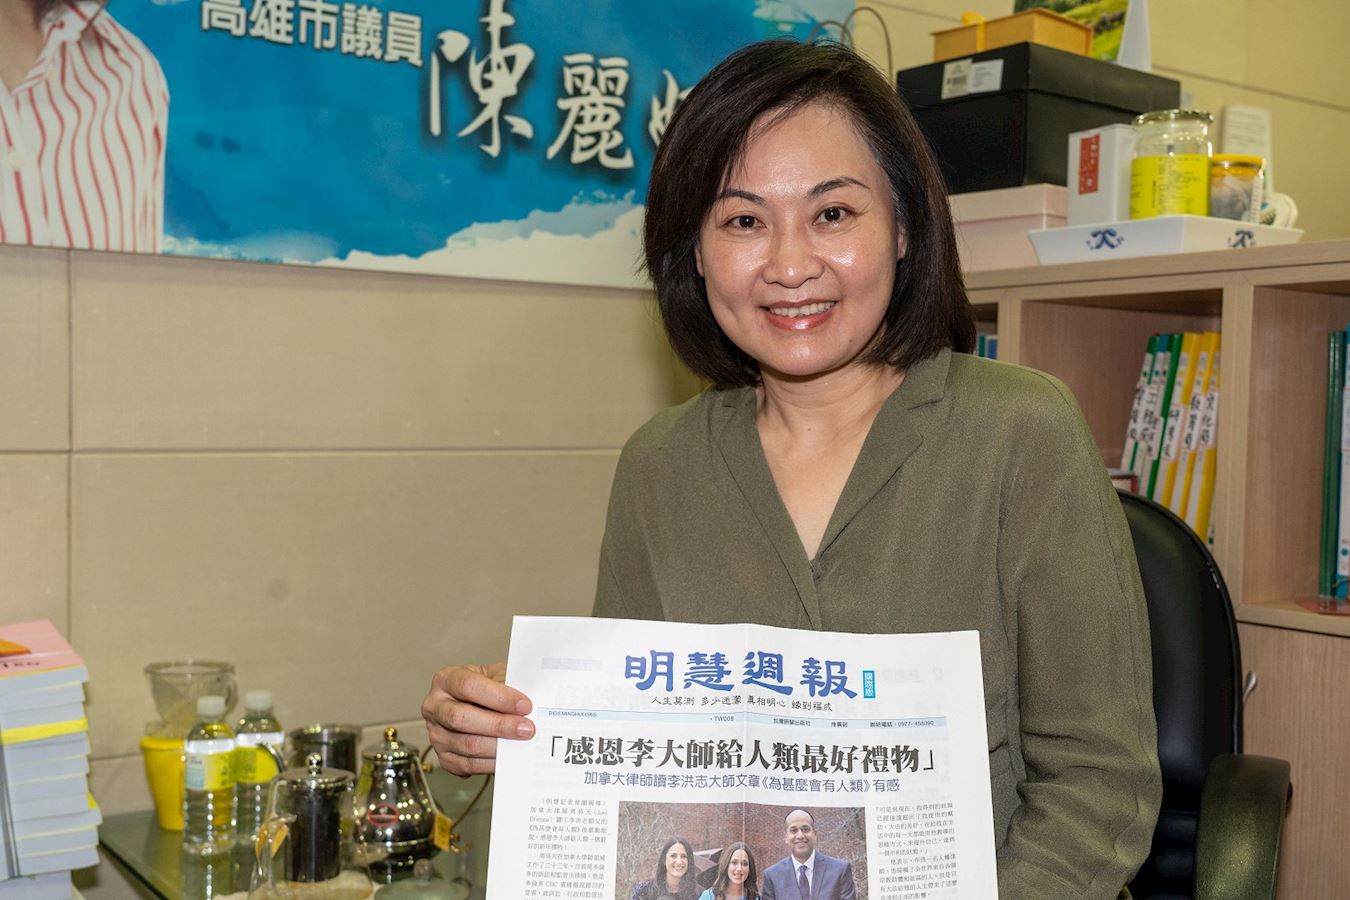 '圖1：台灣高雄市議員陳麗娜恭讀李洪志大師發表的《為甚麼會有人類》經文後，深受啟發，謝謝李大師珍貴的提醒。'